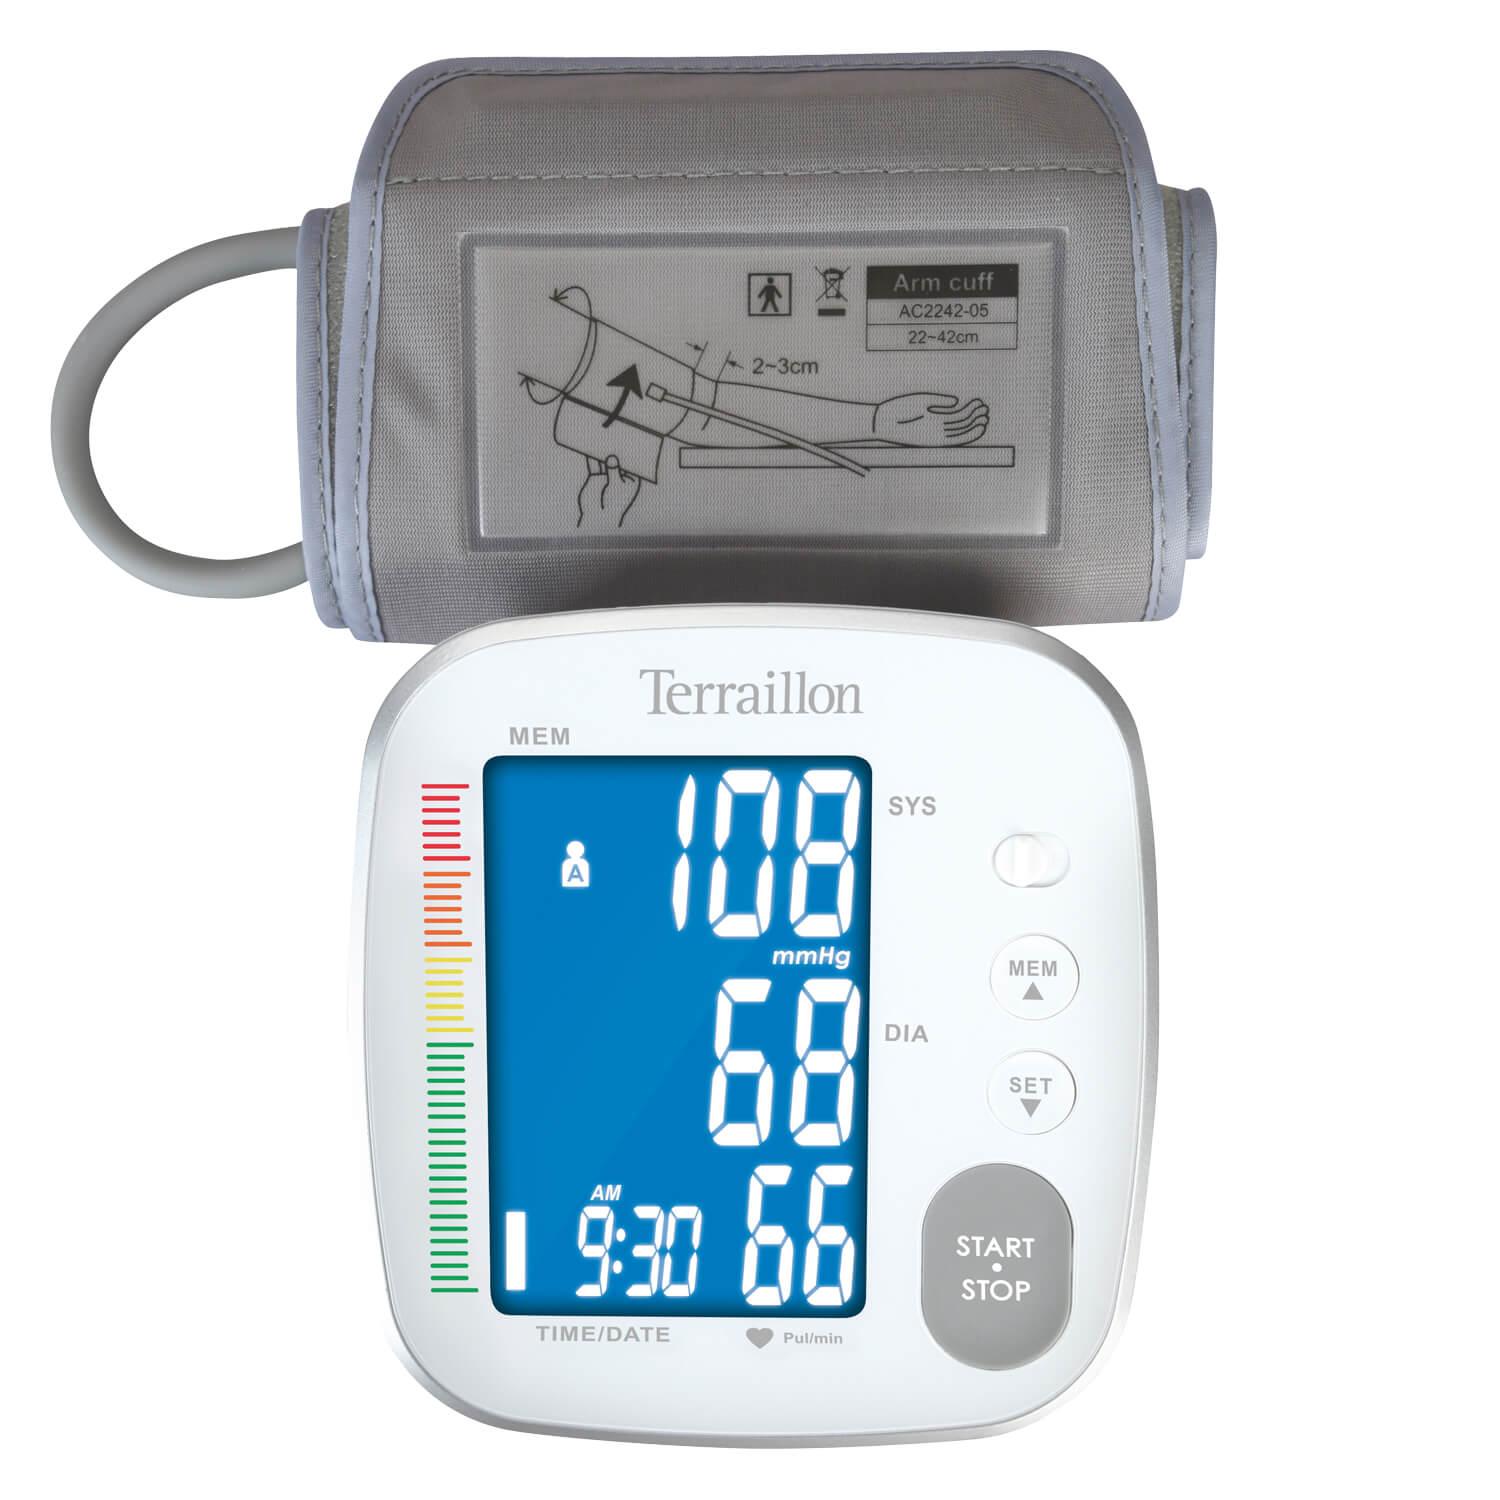 Terraillon - Tensio Bras arm blood pressure device